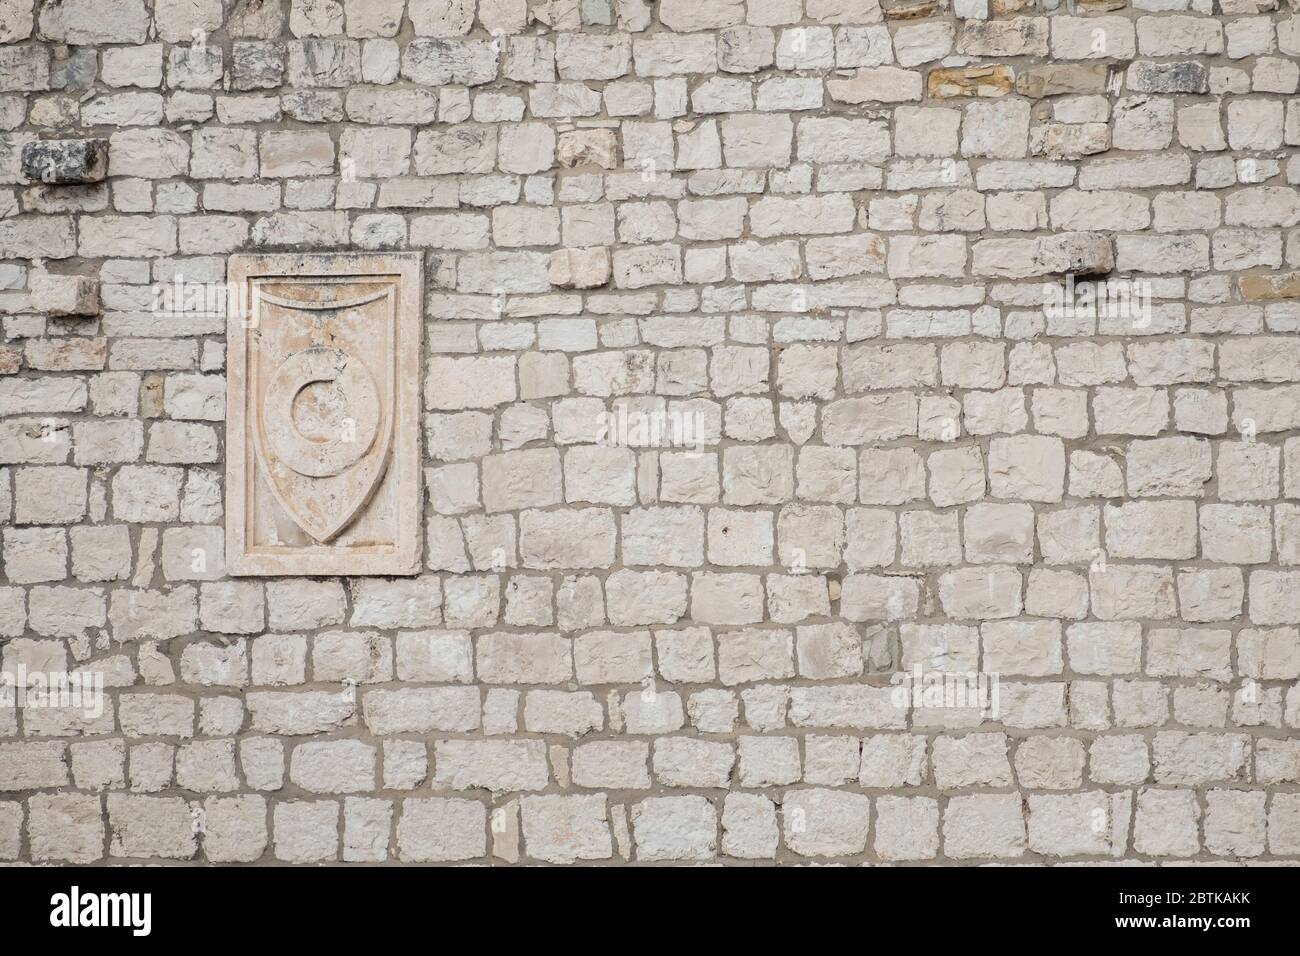 Détail architectural d'un vieux mur en pierre avec sculpture médiévale en plaque, dans la vieille ville historique de Split, Croatie Banque D'Images